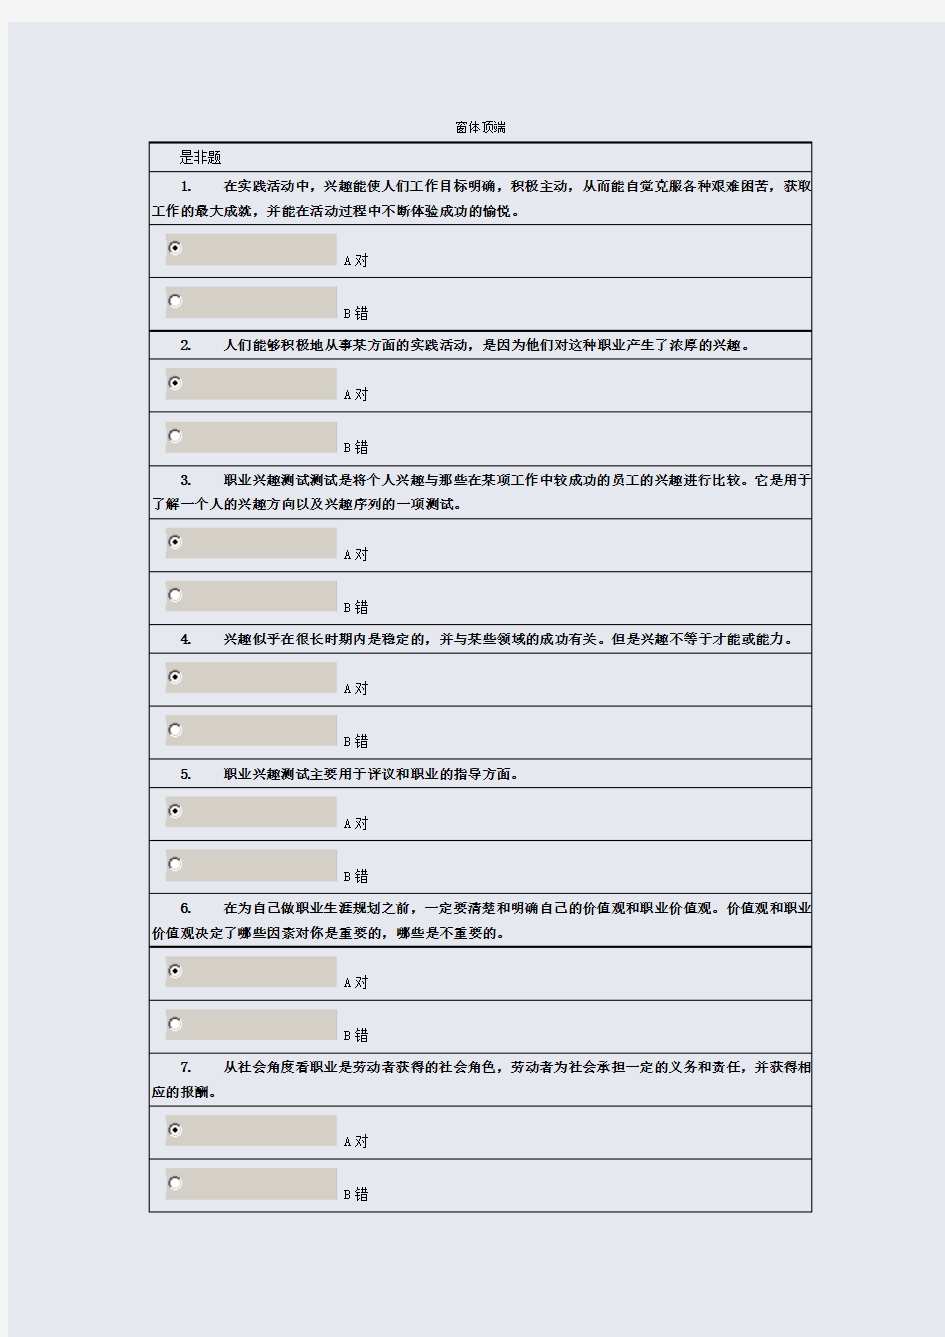 徐州市专业技术人员职业发展与规划网上考试-92分